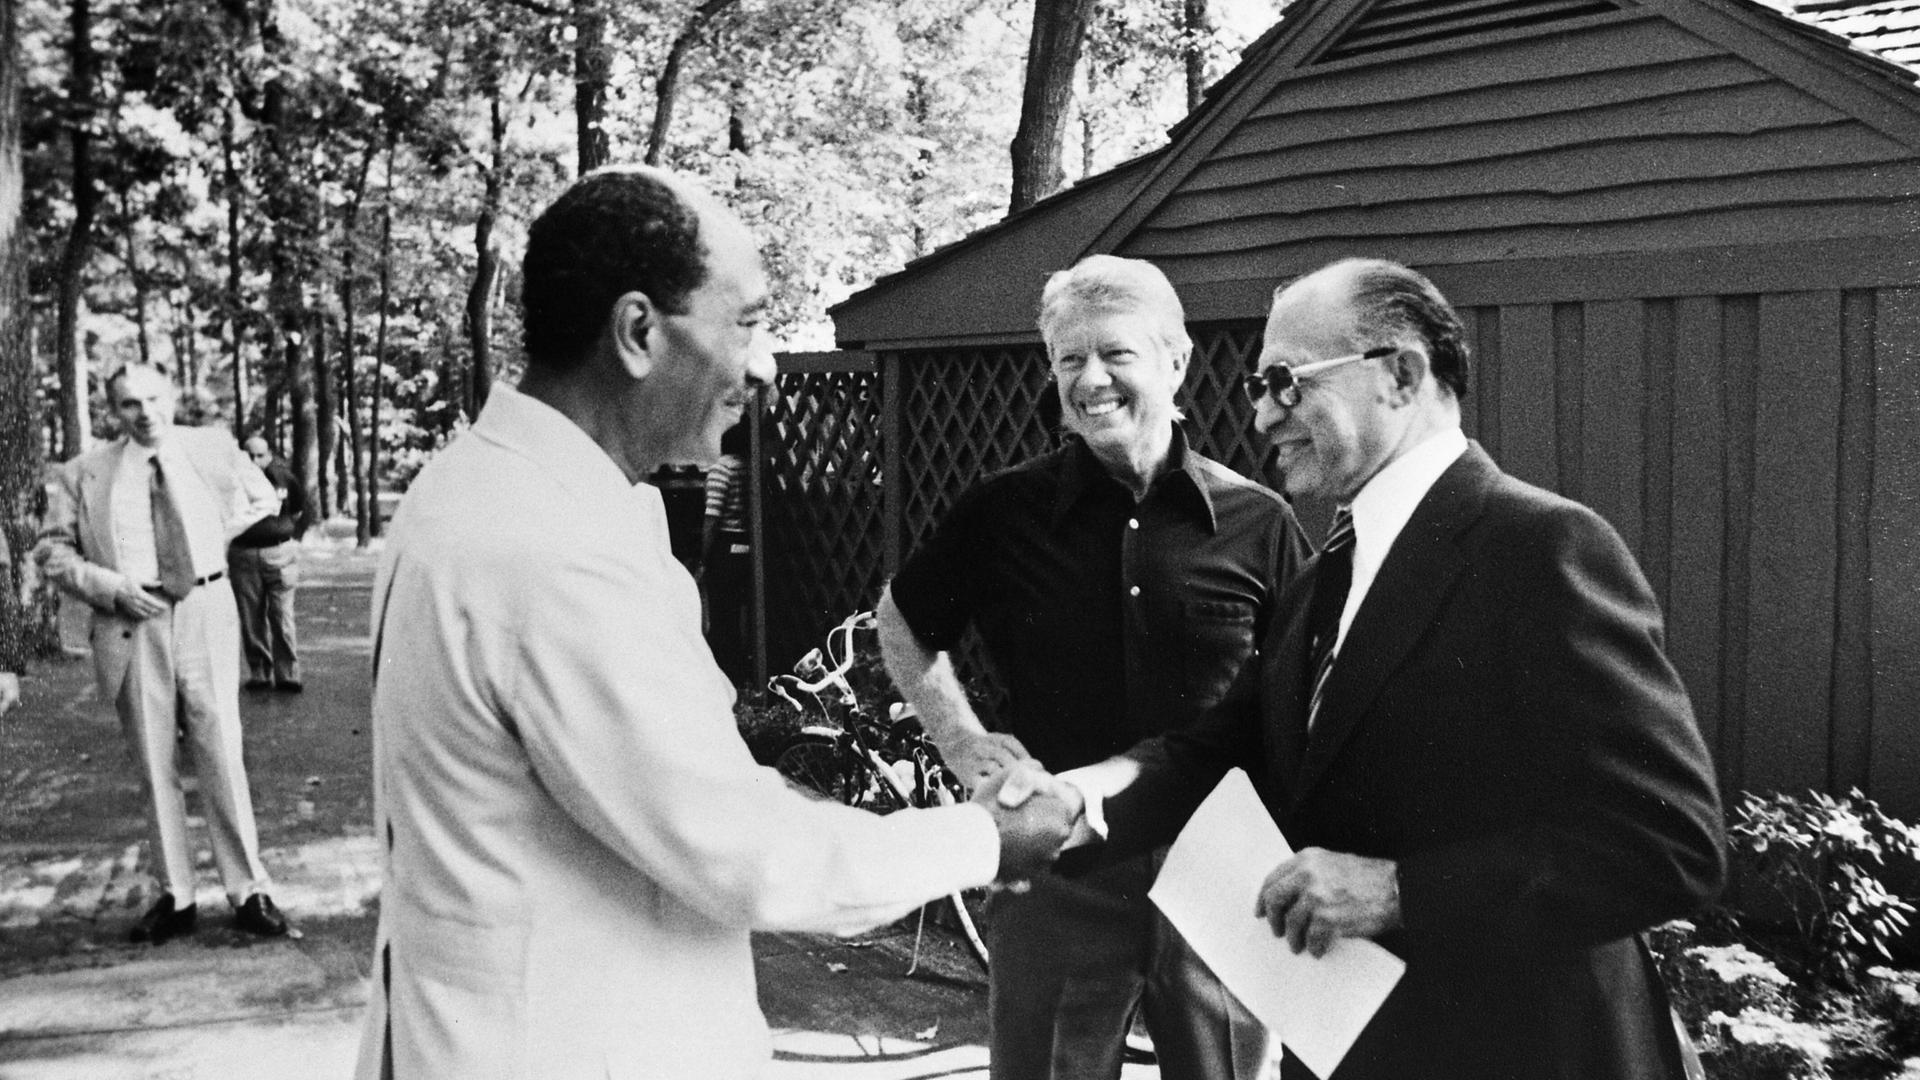 Ein historisches Schwarzweiß-Foto  von 1979 zeigt den israelischen Ministerpräsidenten Menachem Begin mit dem ägyptischen Staatspräsidenten Anwar as Sadat beim Handschlag. In der Mitte steht der damalige US-Präsident Jimmy Carter.